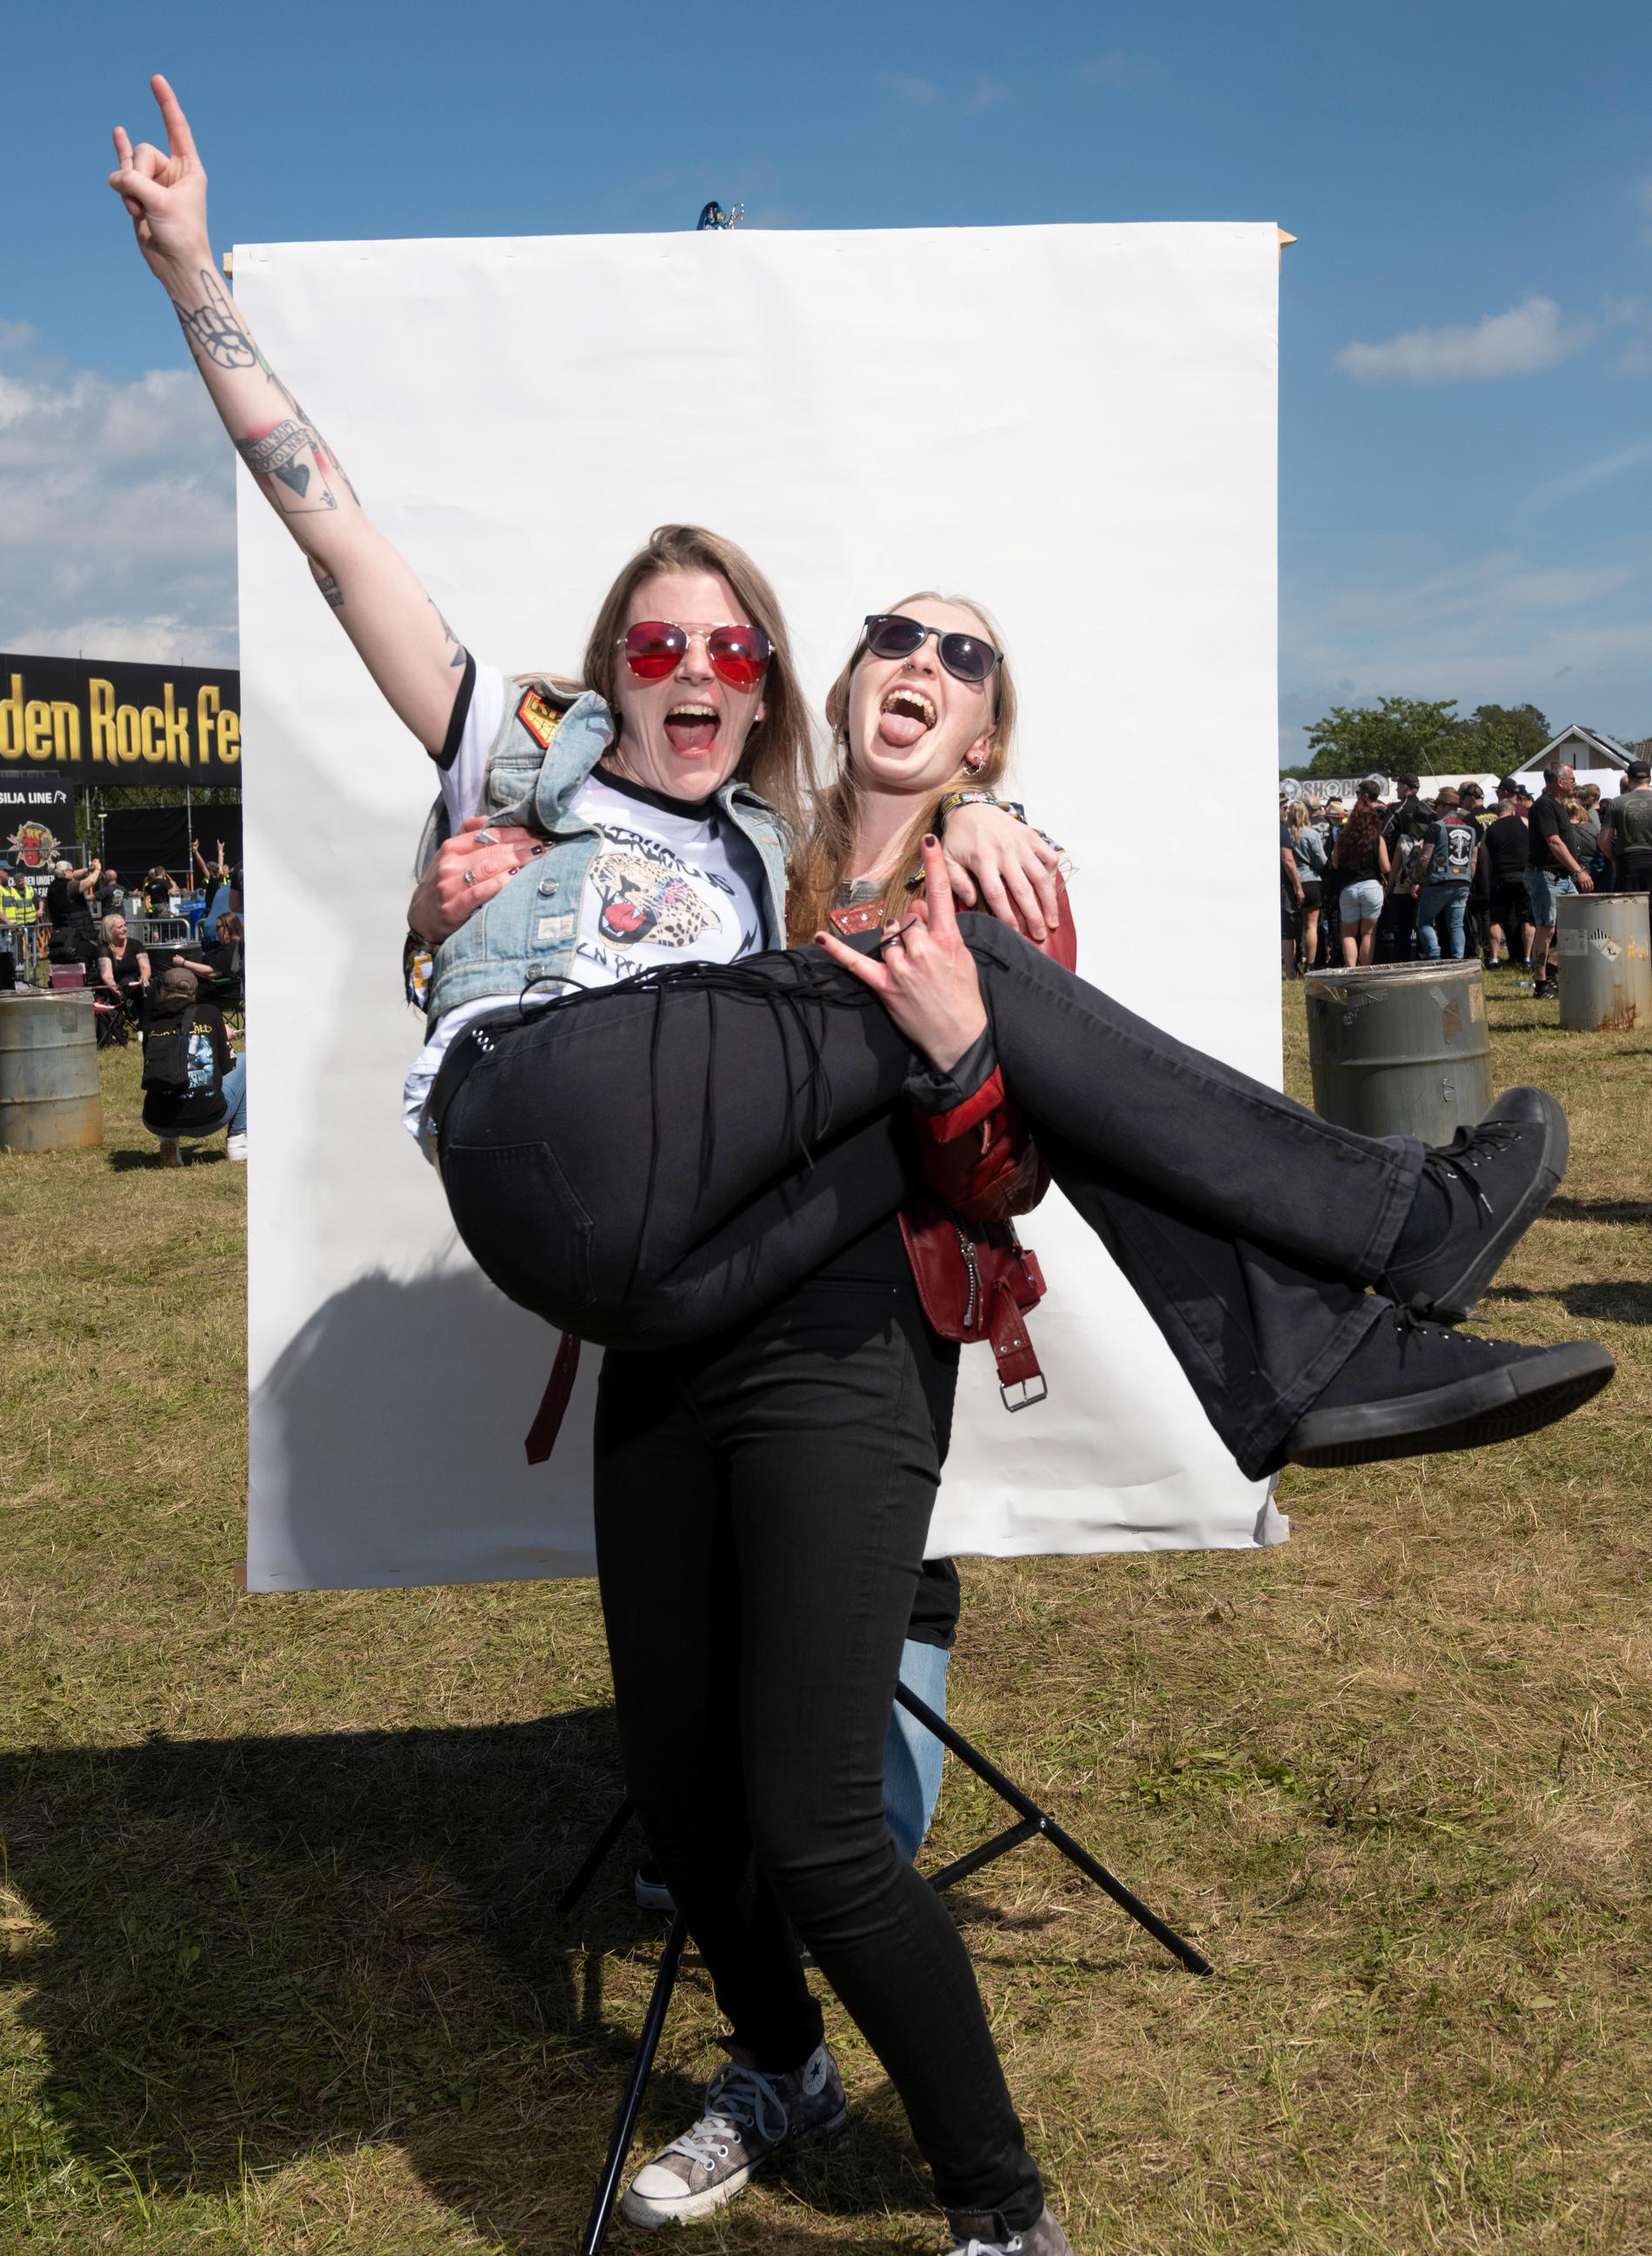 Sara Nilsson, 33, bagare och konditor i Höganäs gör sitt 12:e år på Sweden Rock, här i famnen på sin kompis Cornelia Svensson, 25, från Karlskrona. Deras favorituppträdanden genom åren är Twisted Sister, Hellwings och Iron Maiden 2018.